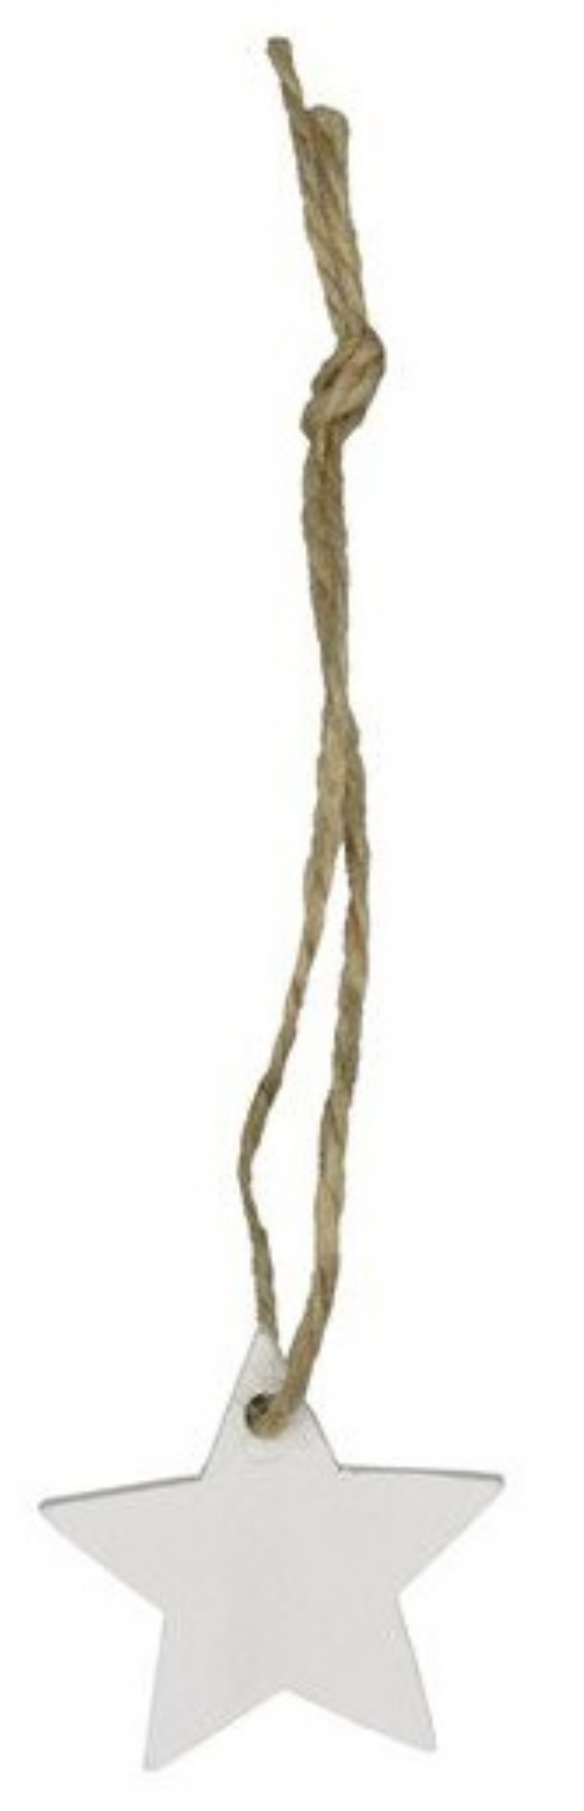 Houten hanger met koord, wit, 3,5 cm, sterretje kopen?